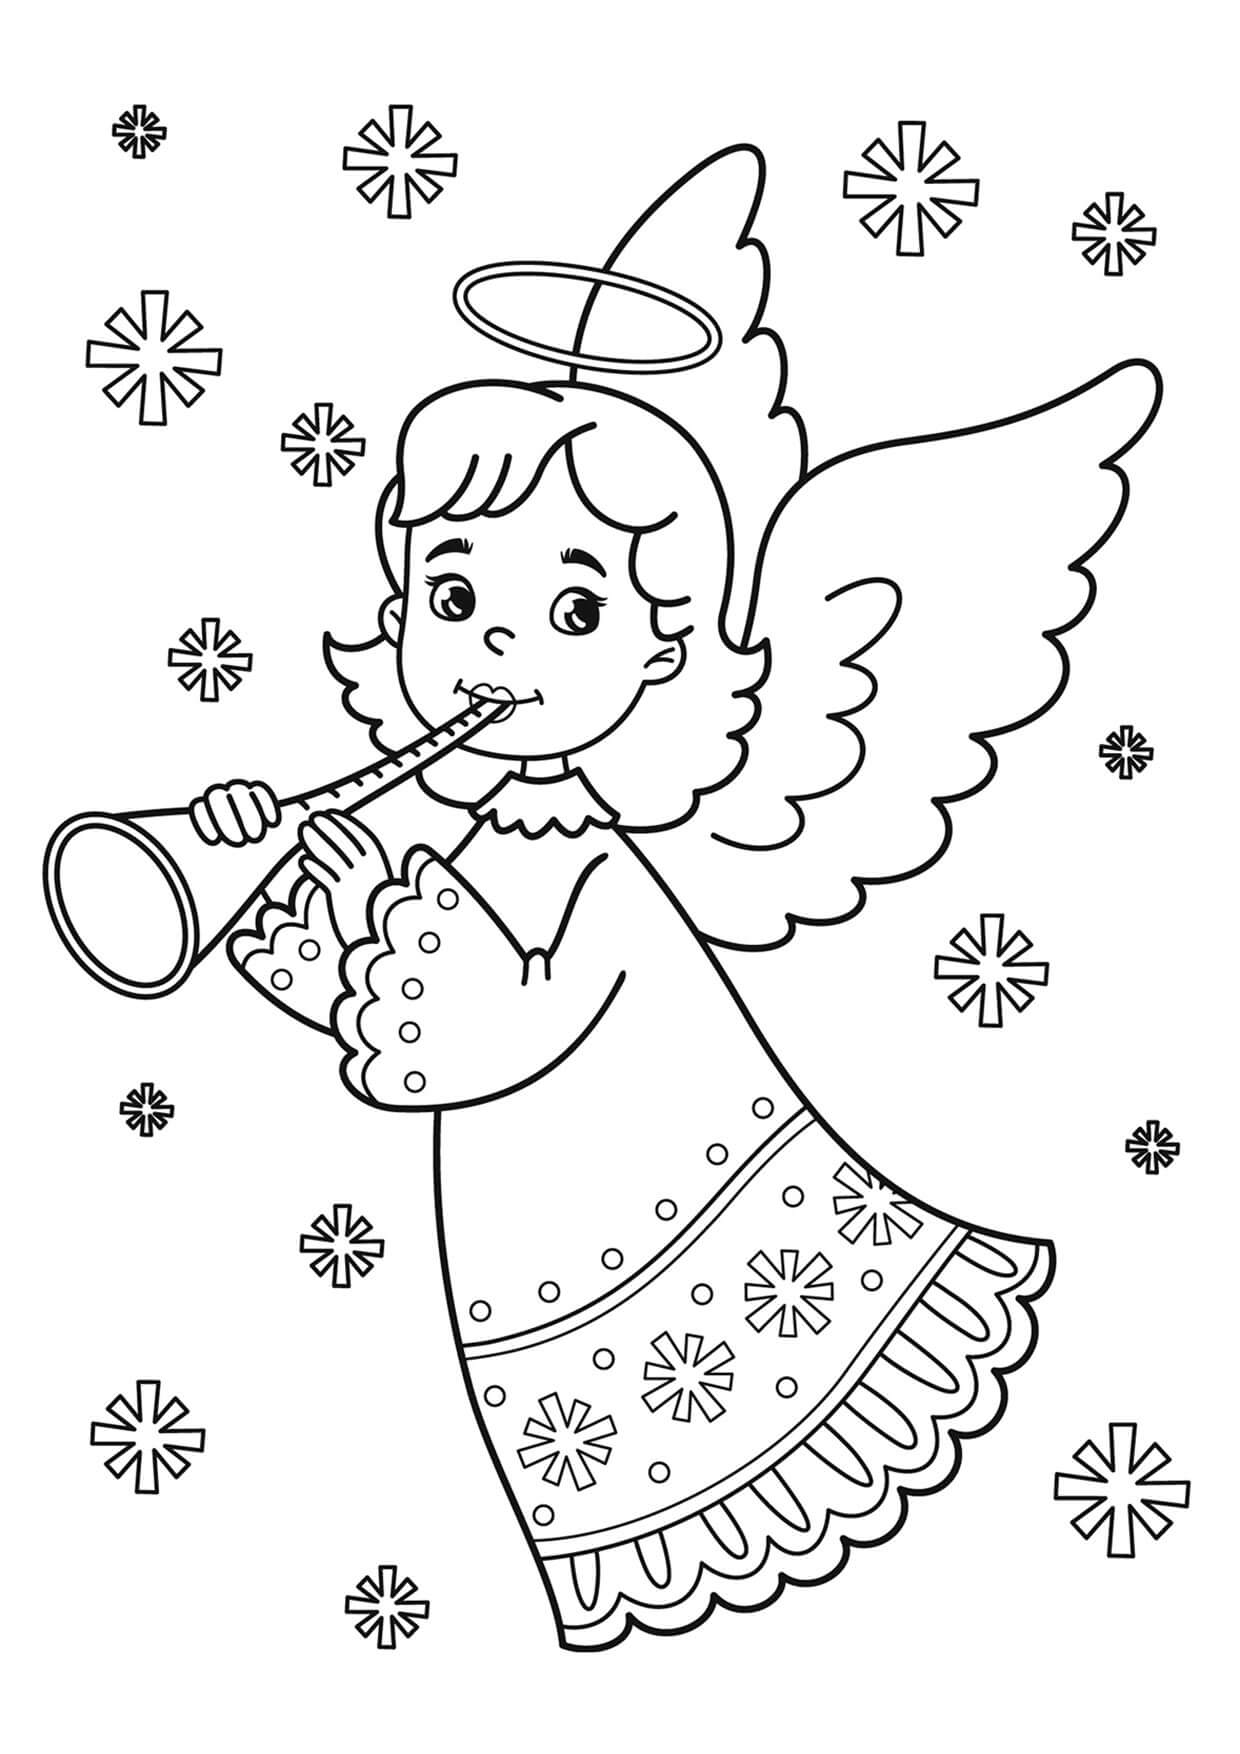 Engel die de fluit speelt